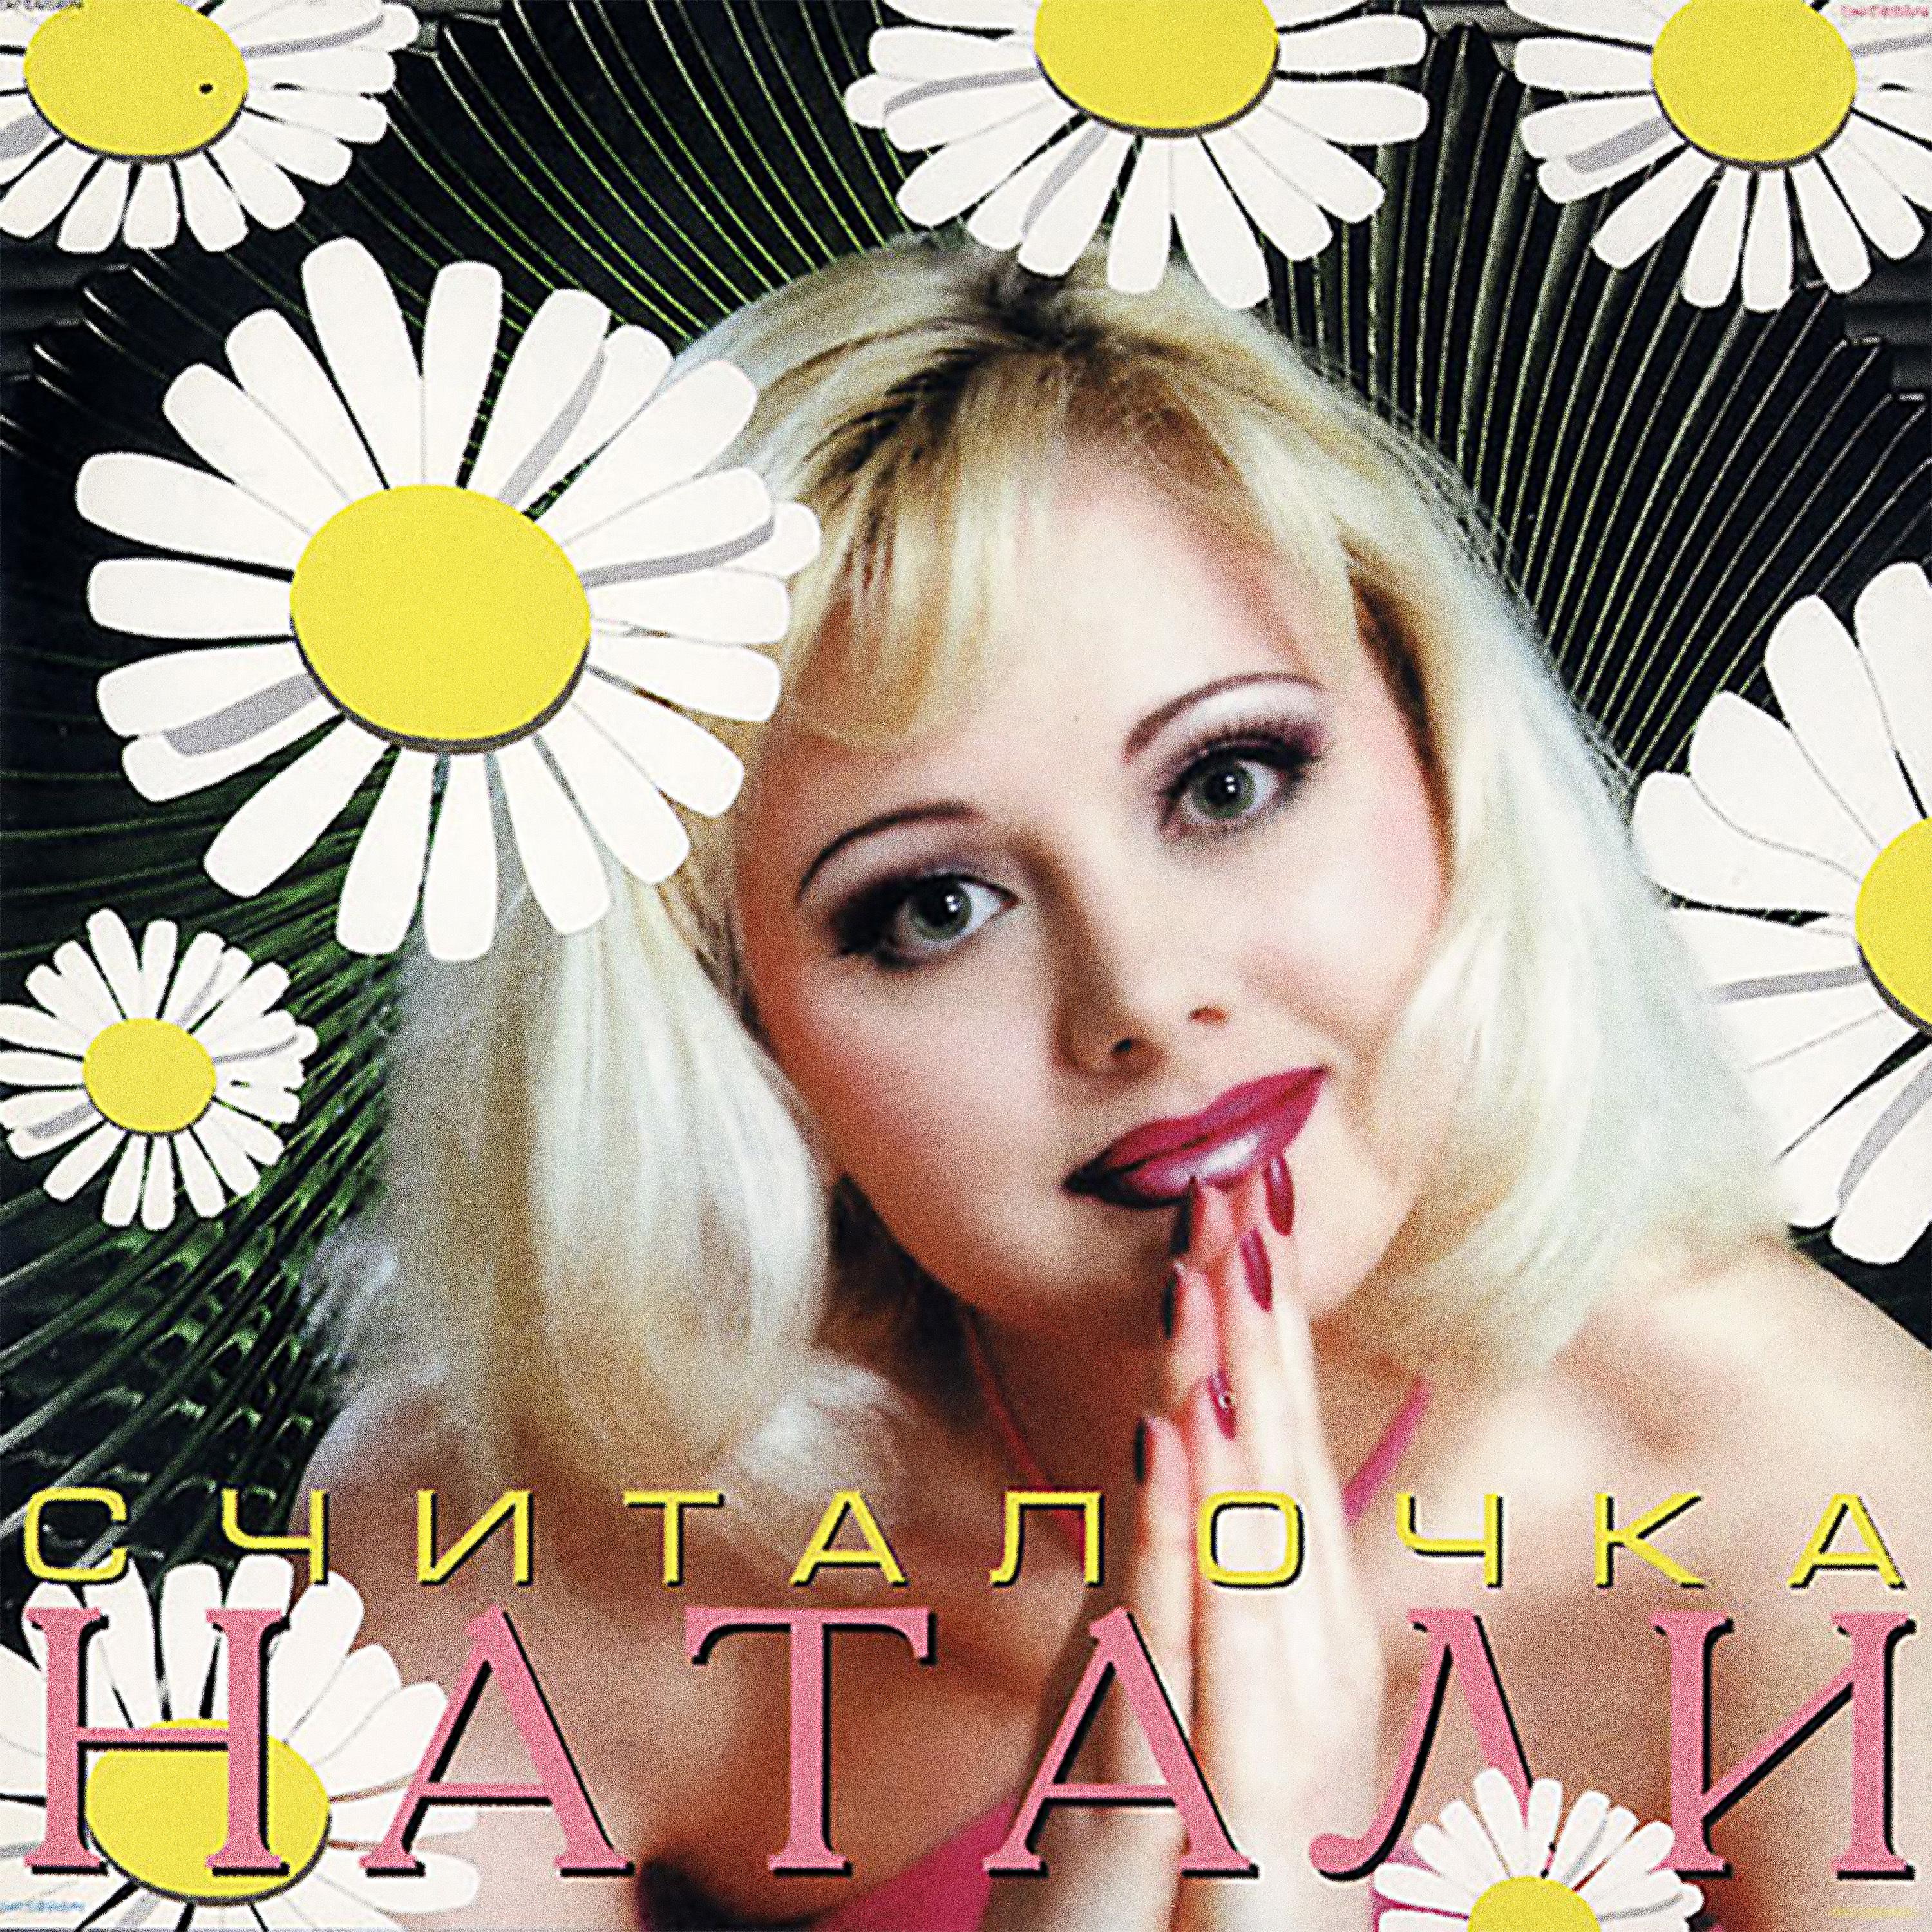 Песня хочешь певица. Натали певица. Натали считалочка 1999 альбом. Натали певица 90. Диск певица Натали.